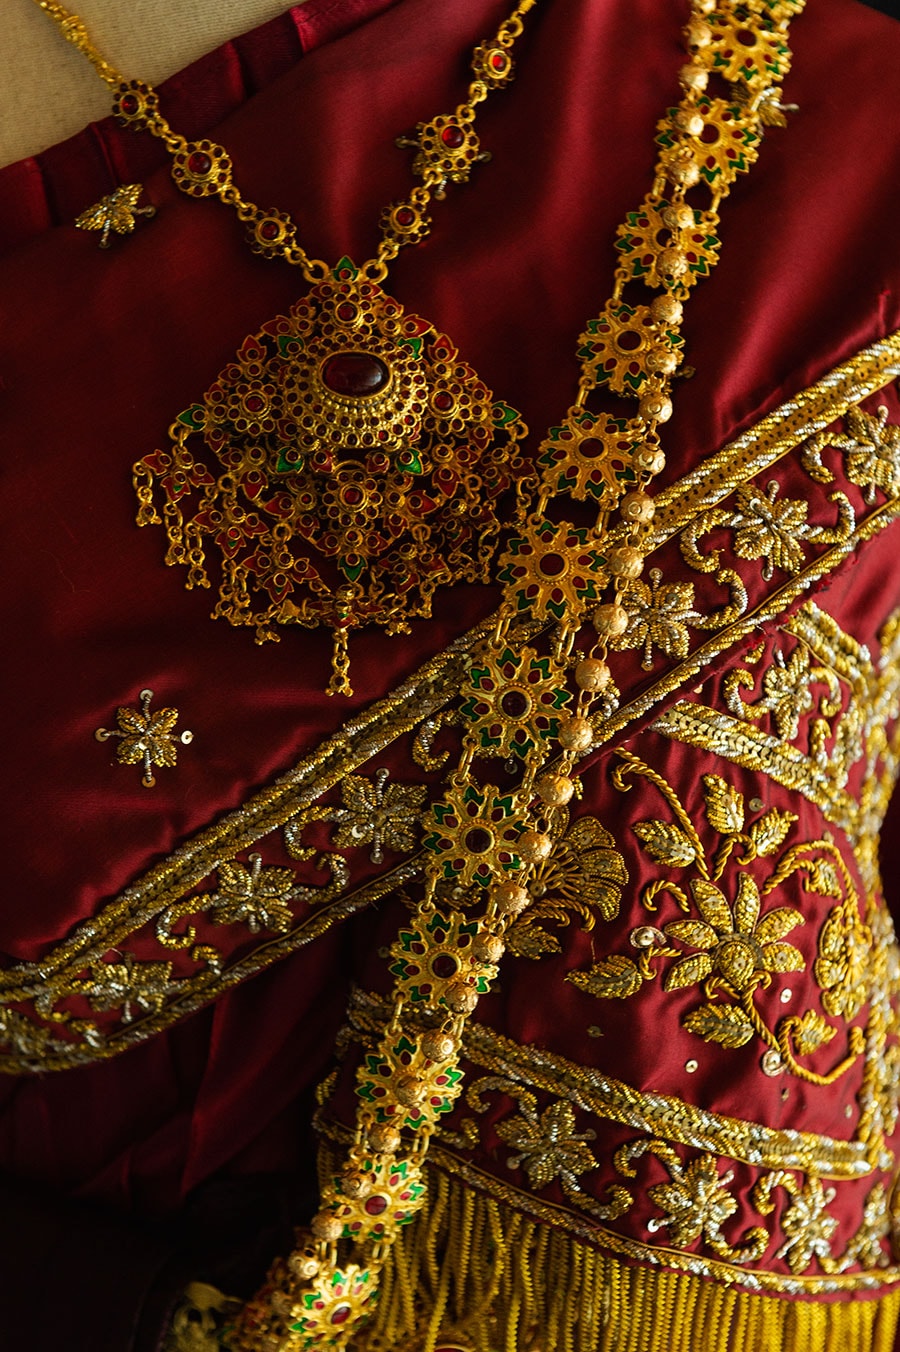 タイ女性の正装におけるトップスが「サバイ」。絹の布地に施された最高級の伝統刺繡。